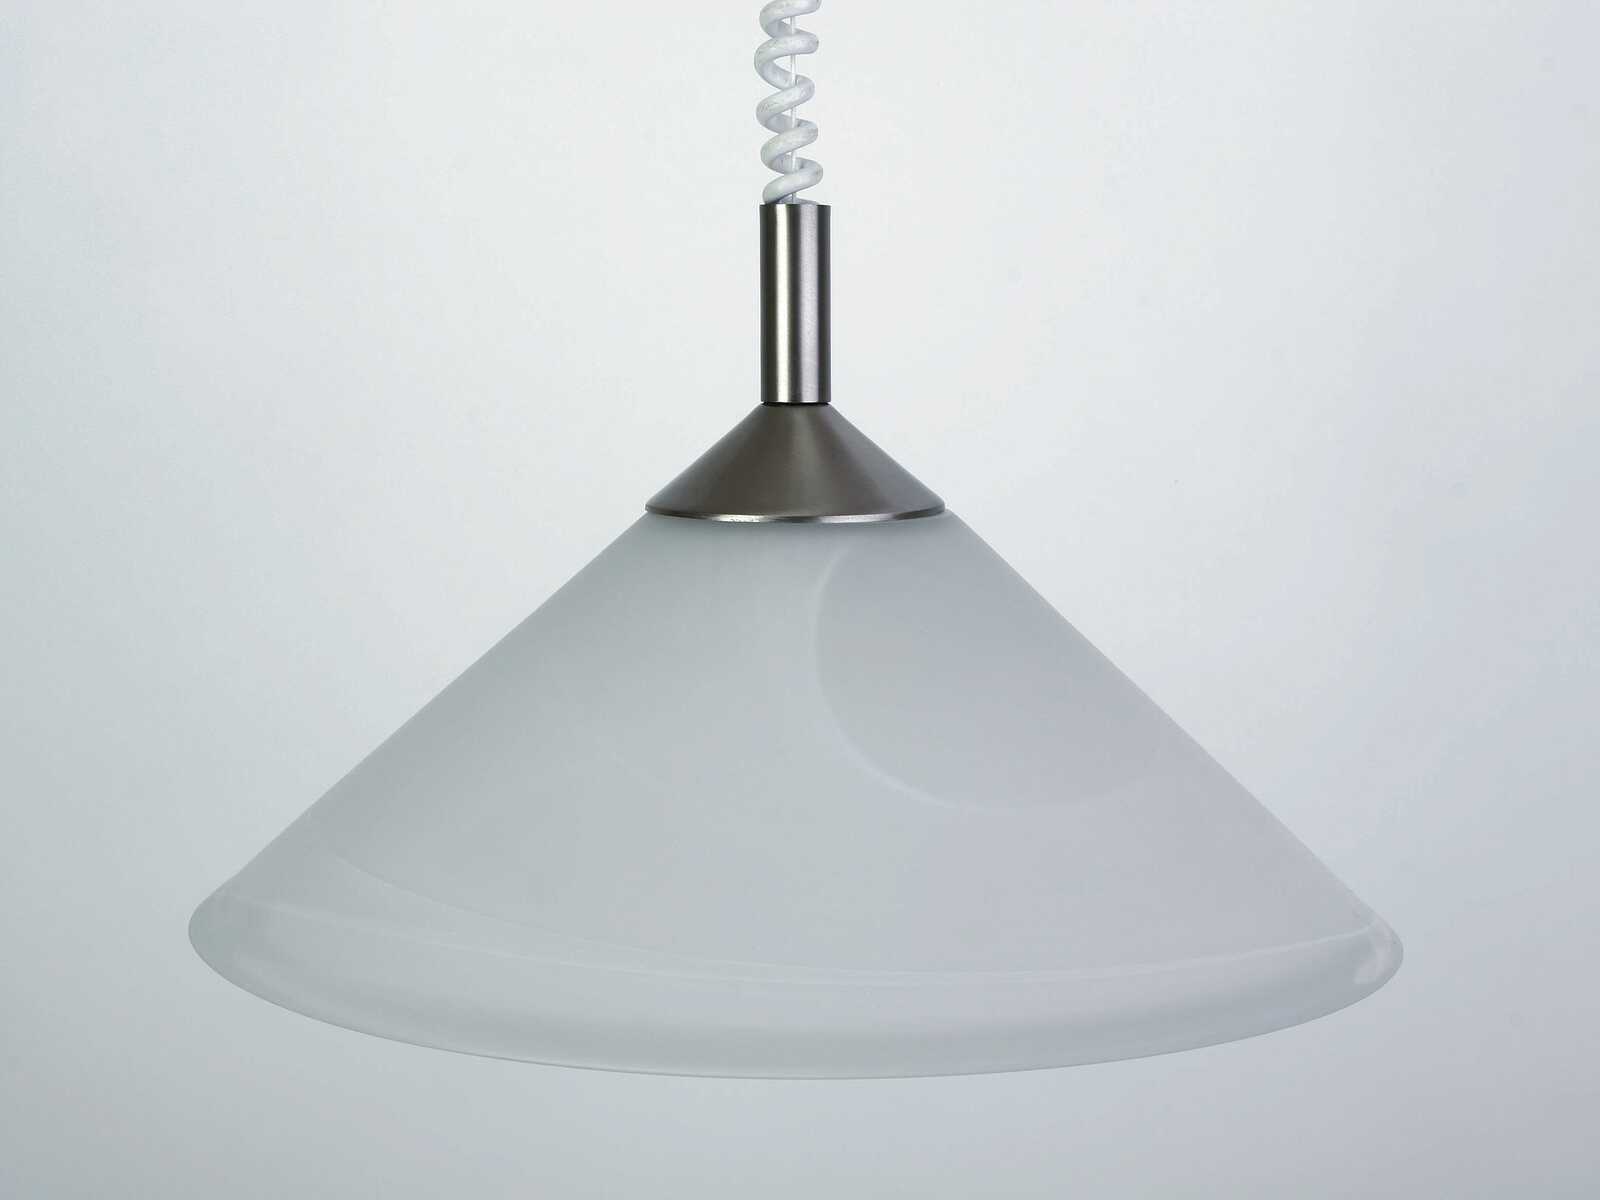             Lámpara colgante de cristal - Alva - plata, blanco
        